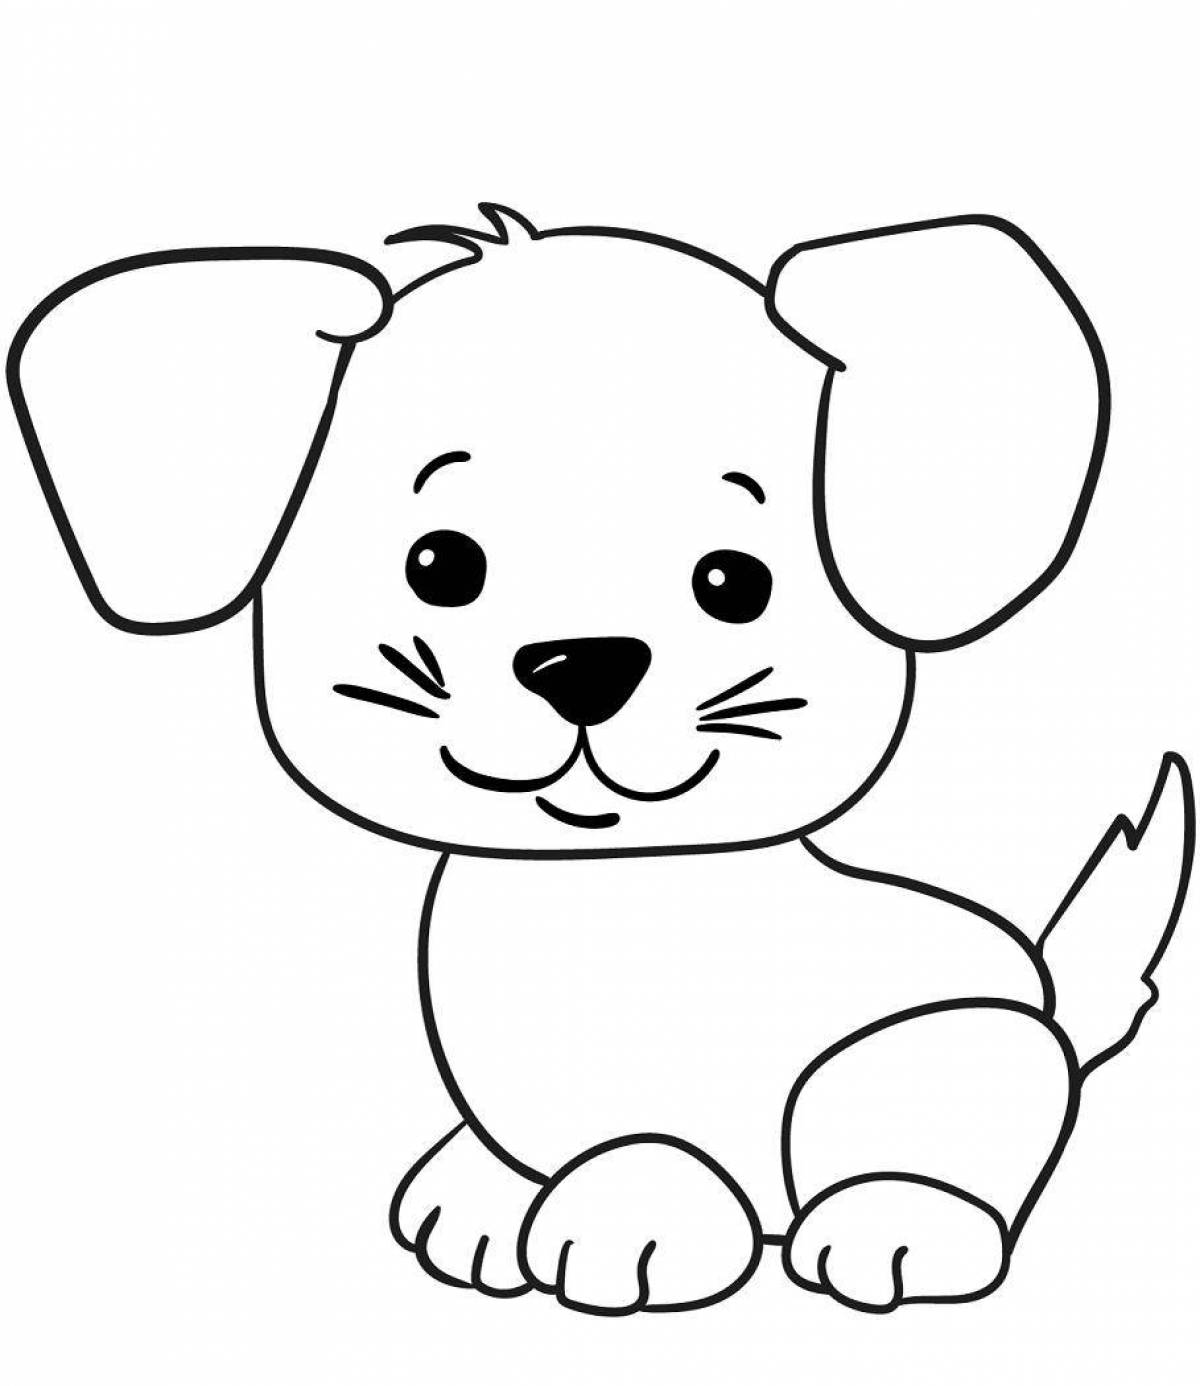 Веселая собачка-раскраска для детей 2-3 лет